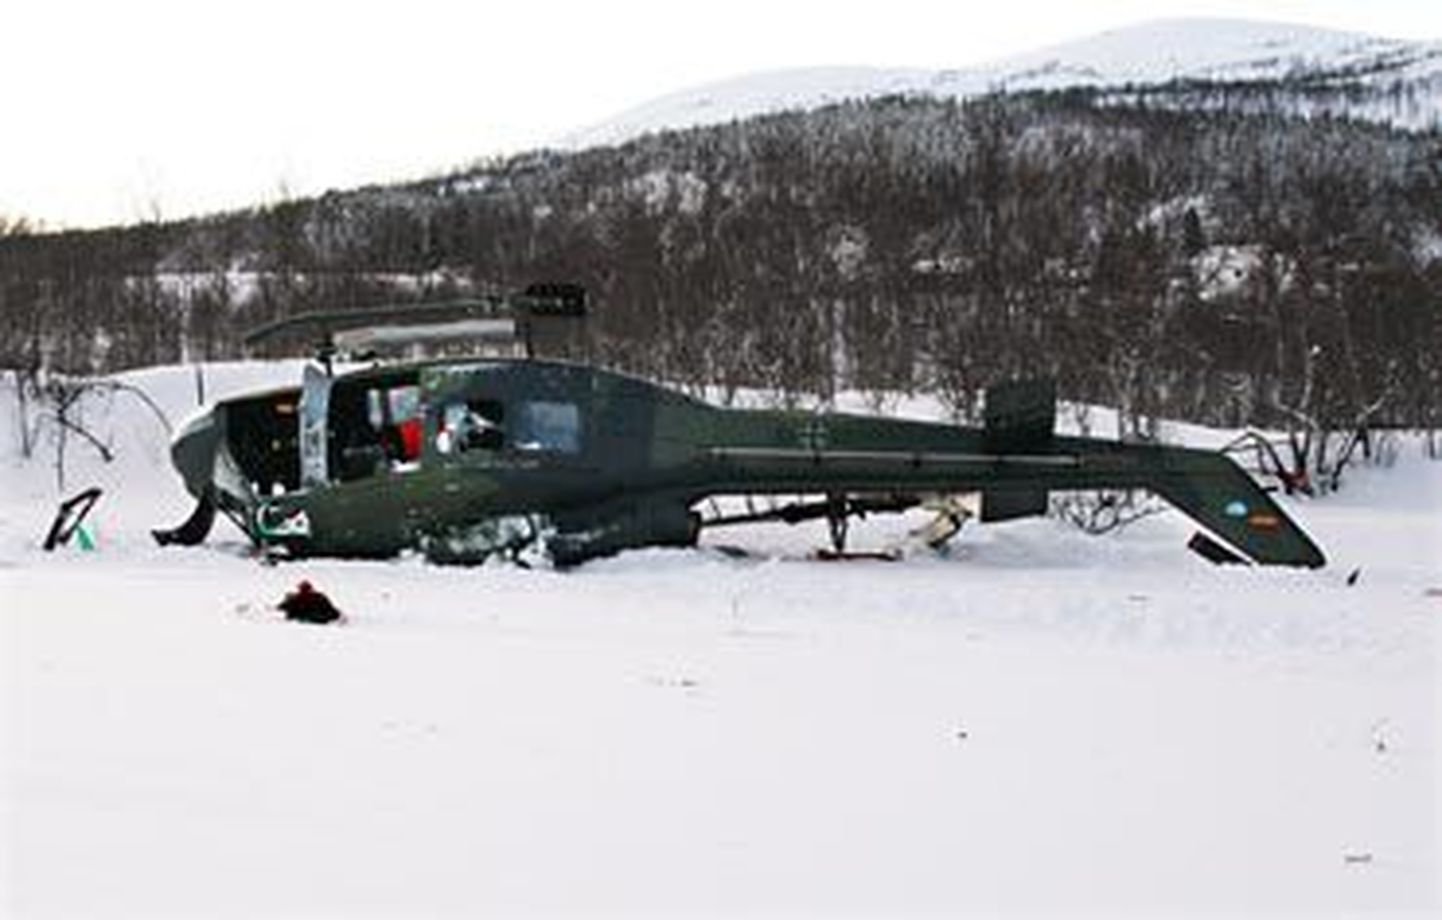 Põhja-Norras õhkutõusmisel alla kukkunud Saksa relvajõudude helikopter Bell UH1B-370.